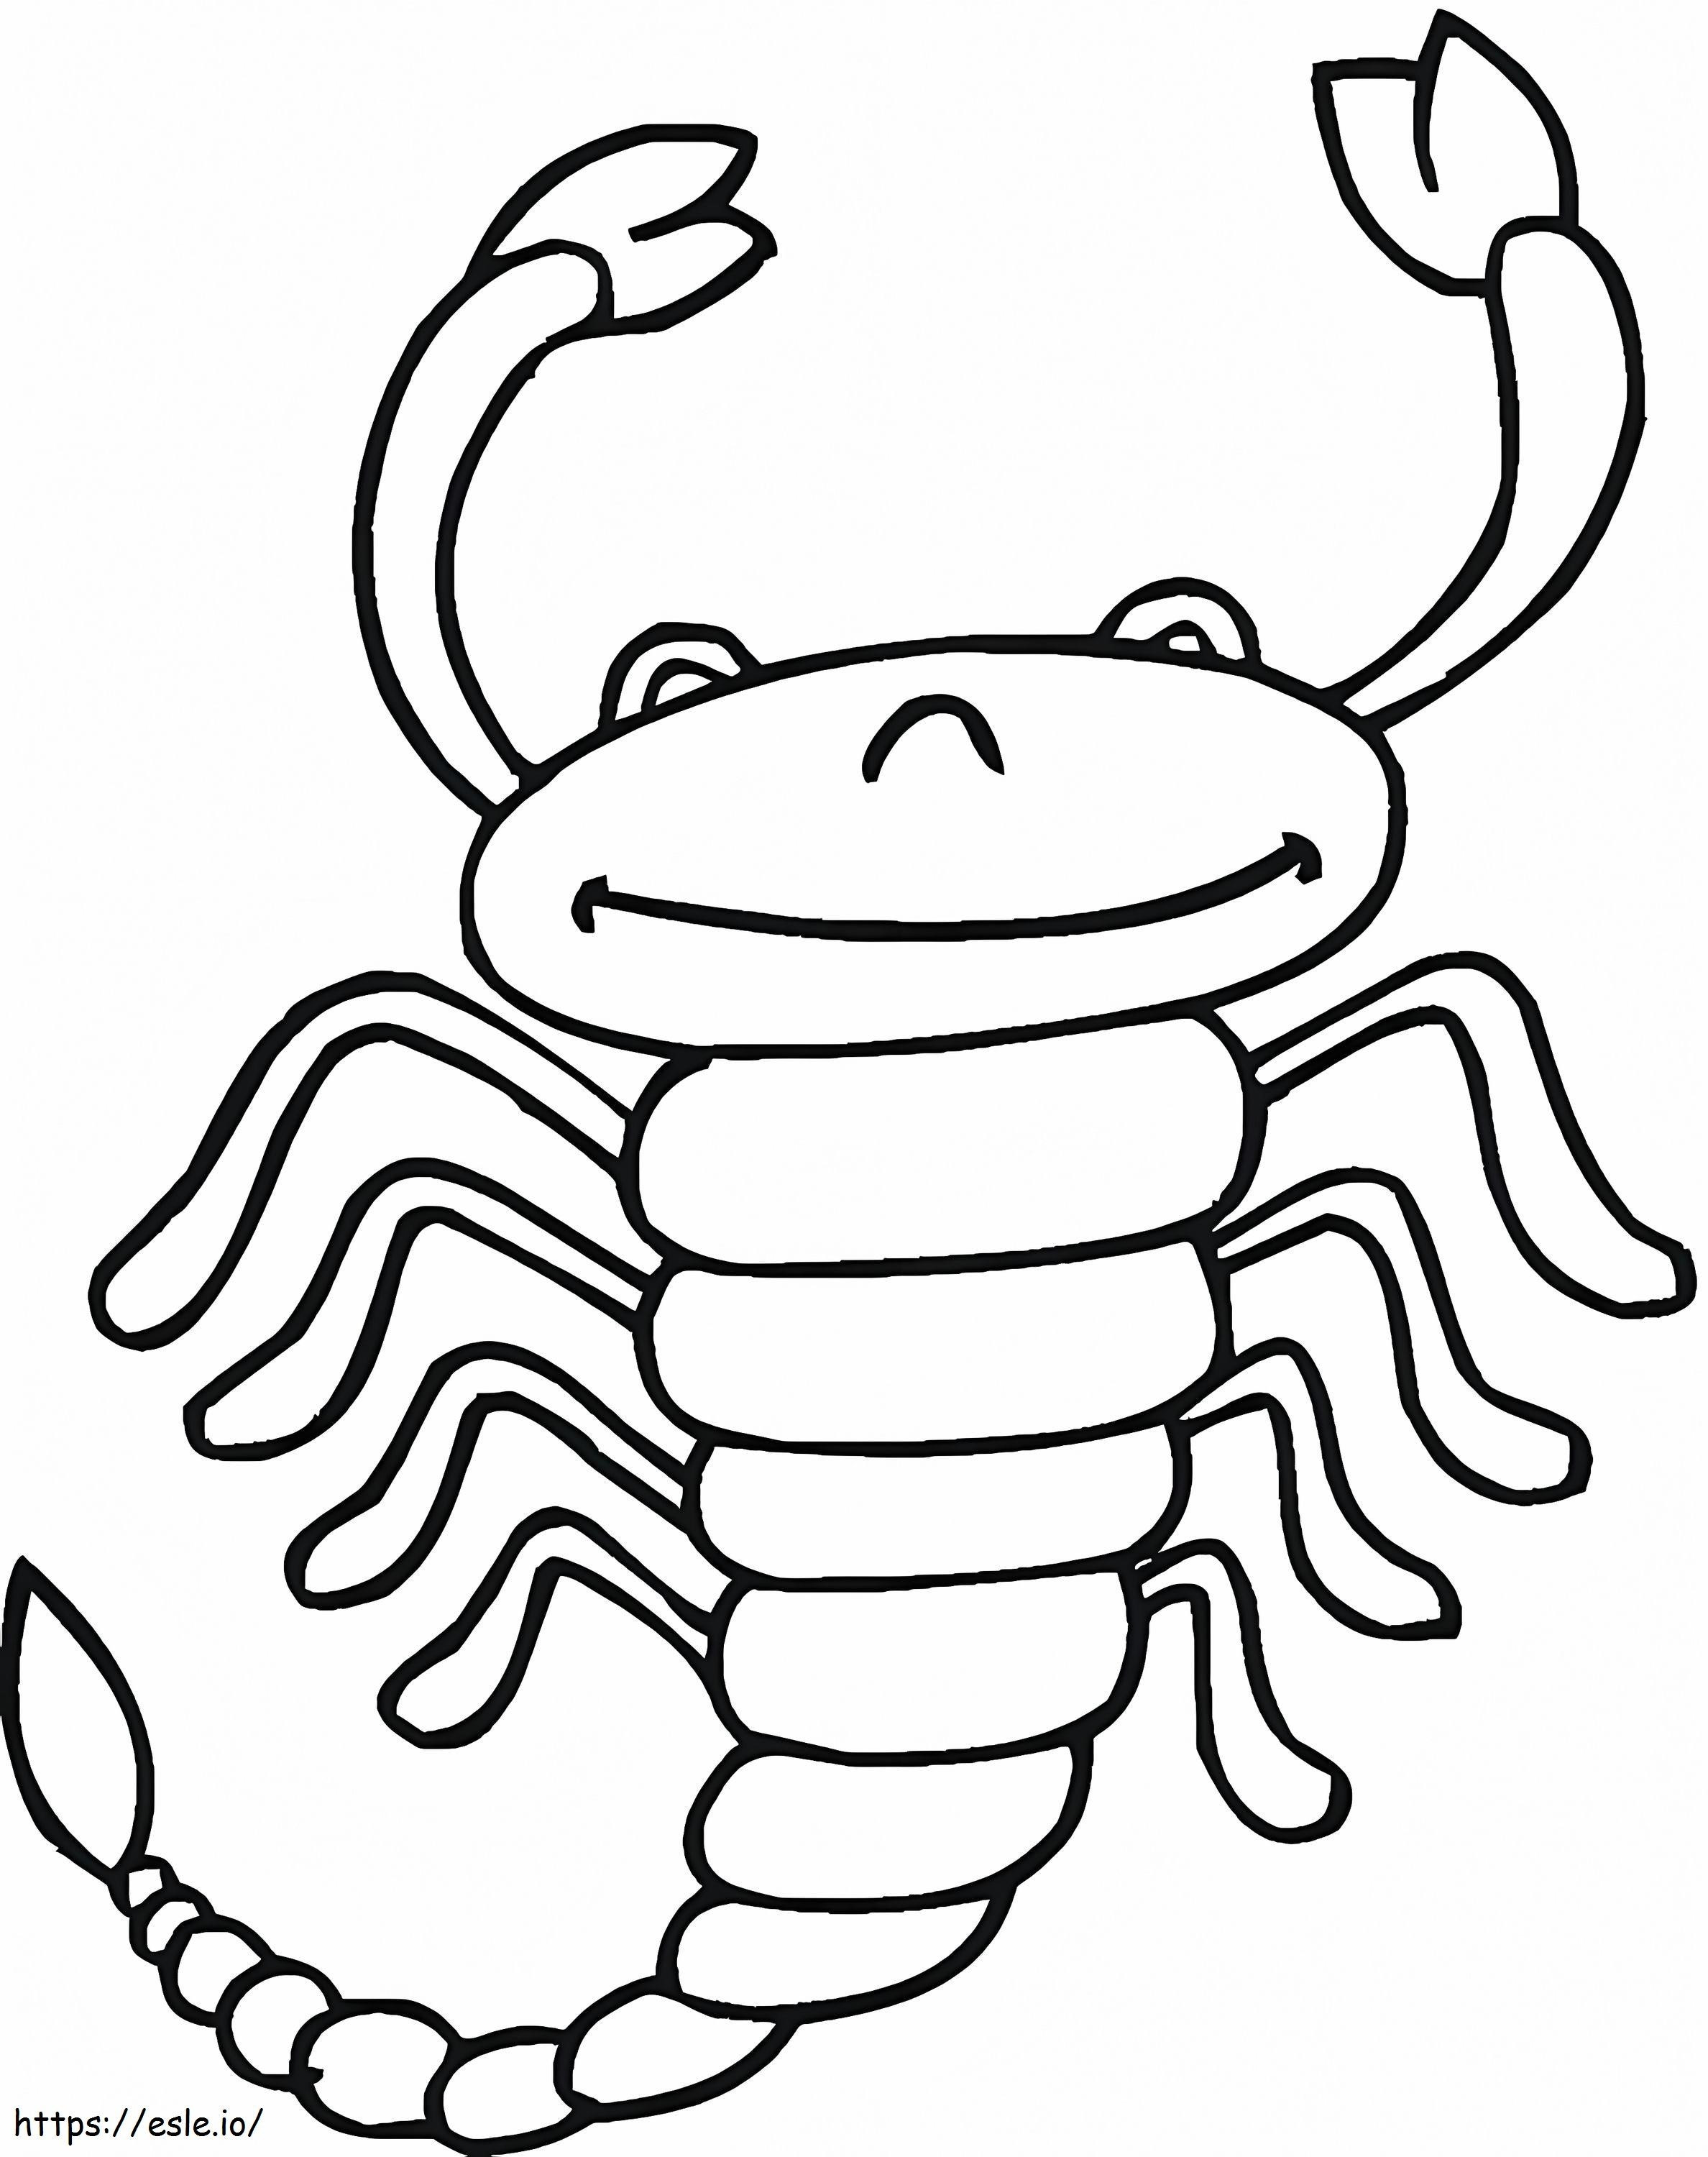 Scorpione divertente da colorare